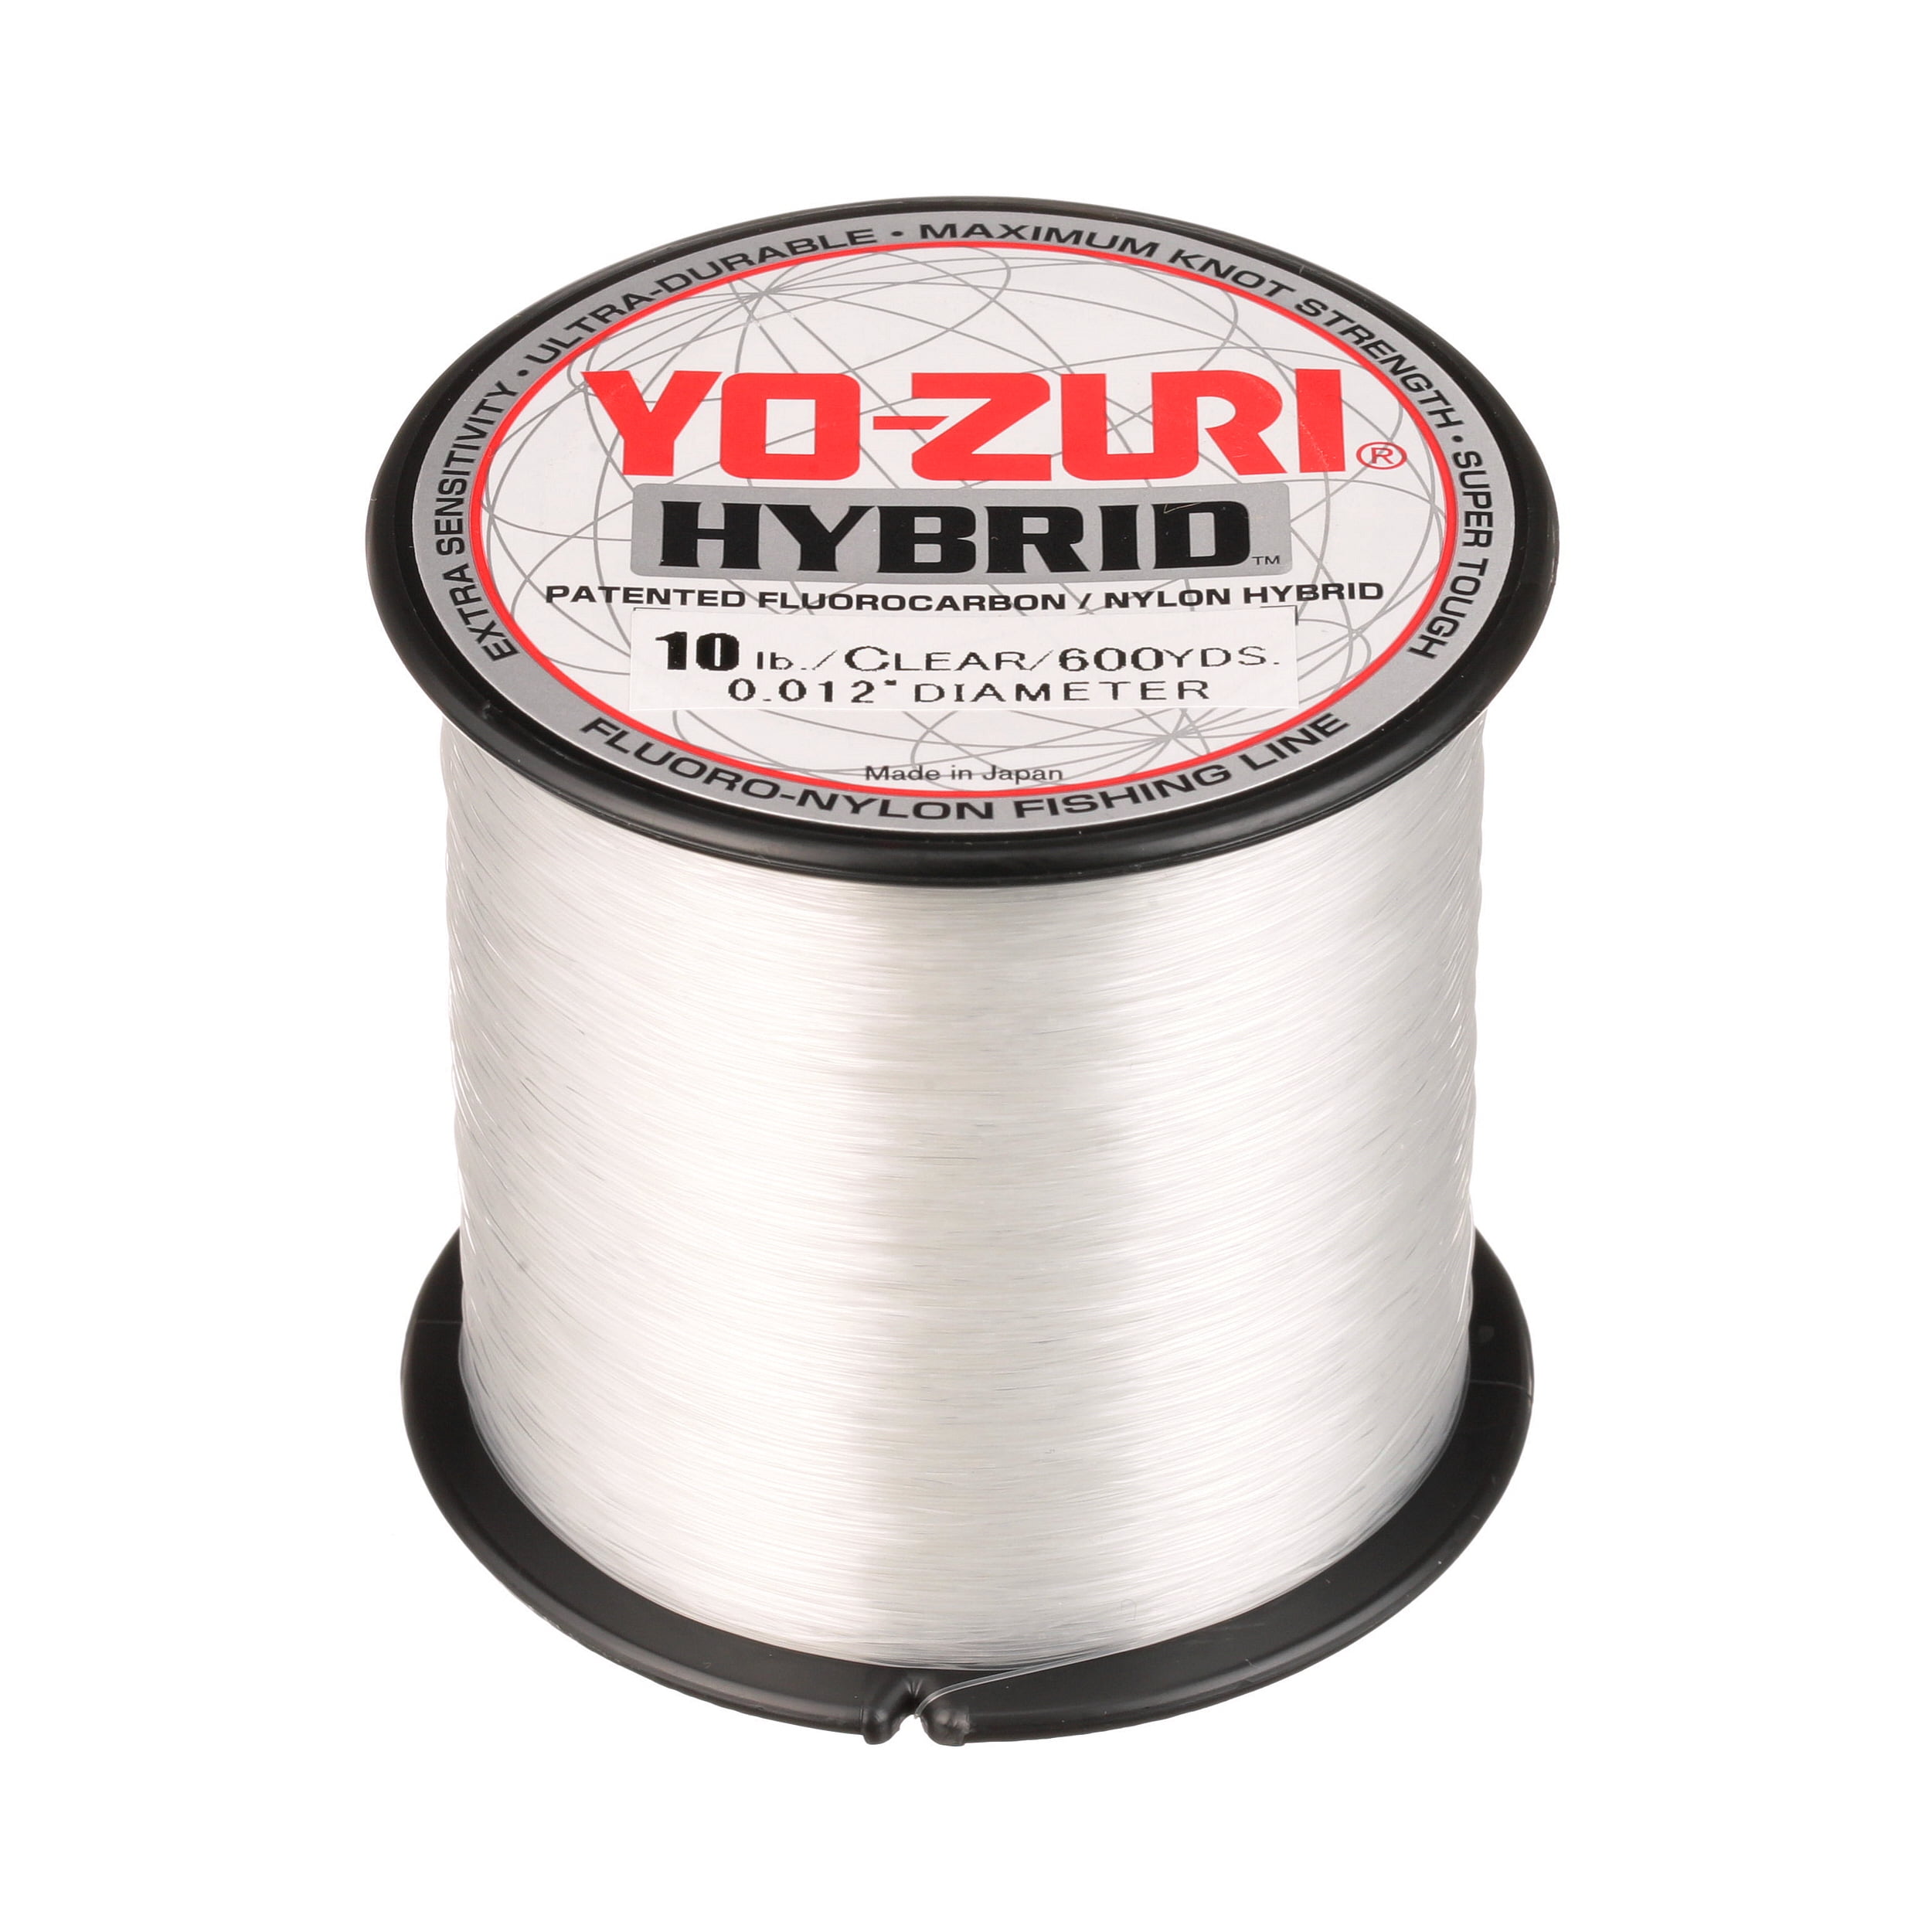 YO-ZURI HYBRID Fluorocarbon 20lb Line 2-600 Yard Rolls CLEAR NEW! 